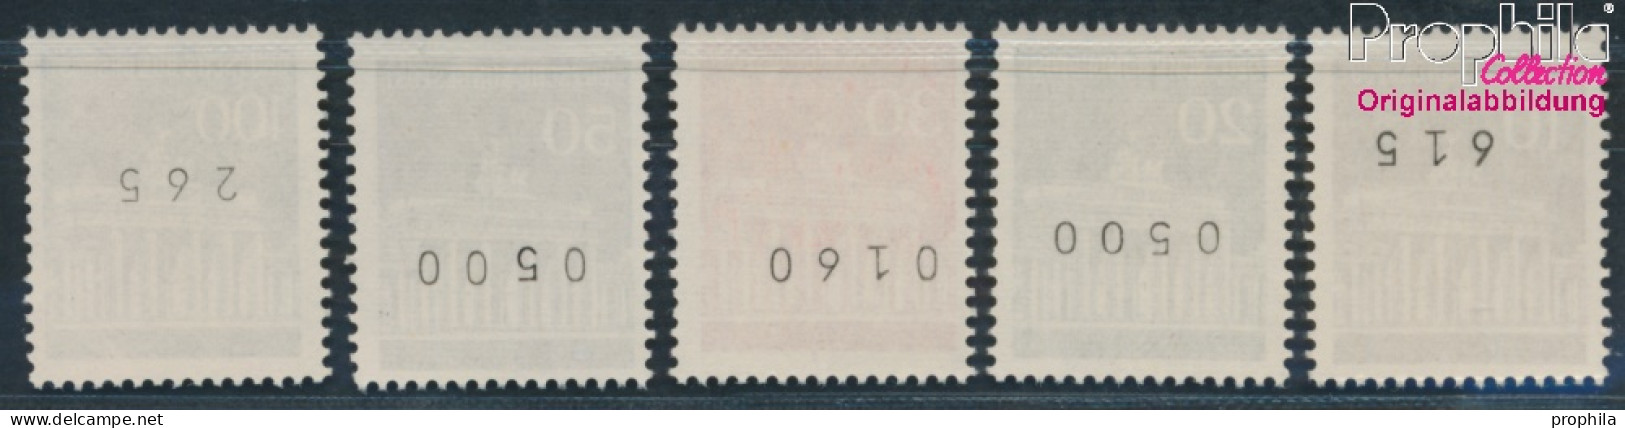 BRD 506w R-510w R Mit Zählnummer (kpl.) Matte Gummierung Postfrisch 1966 Brandenburger Tor (10348150 - Ungebraucht